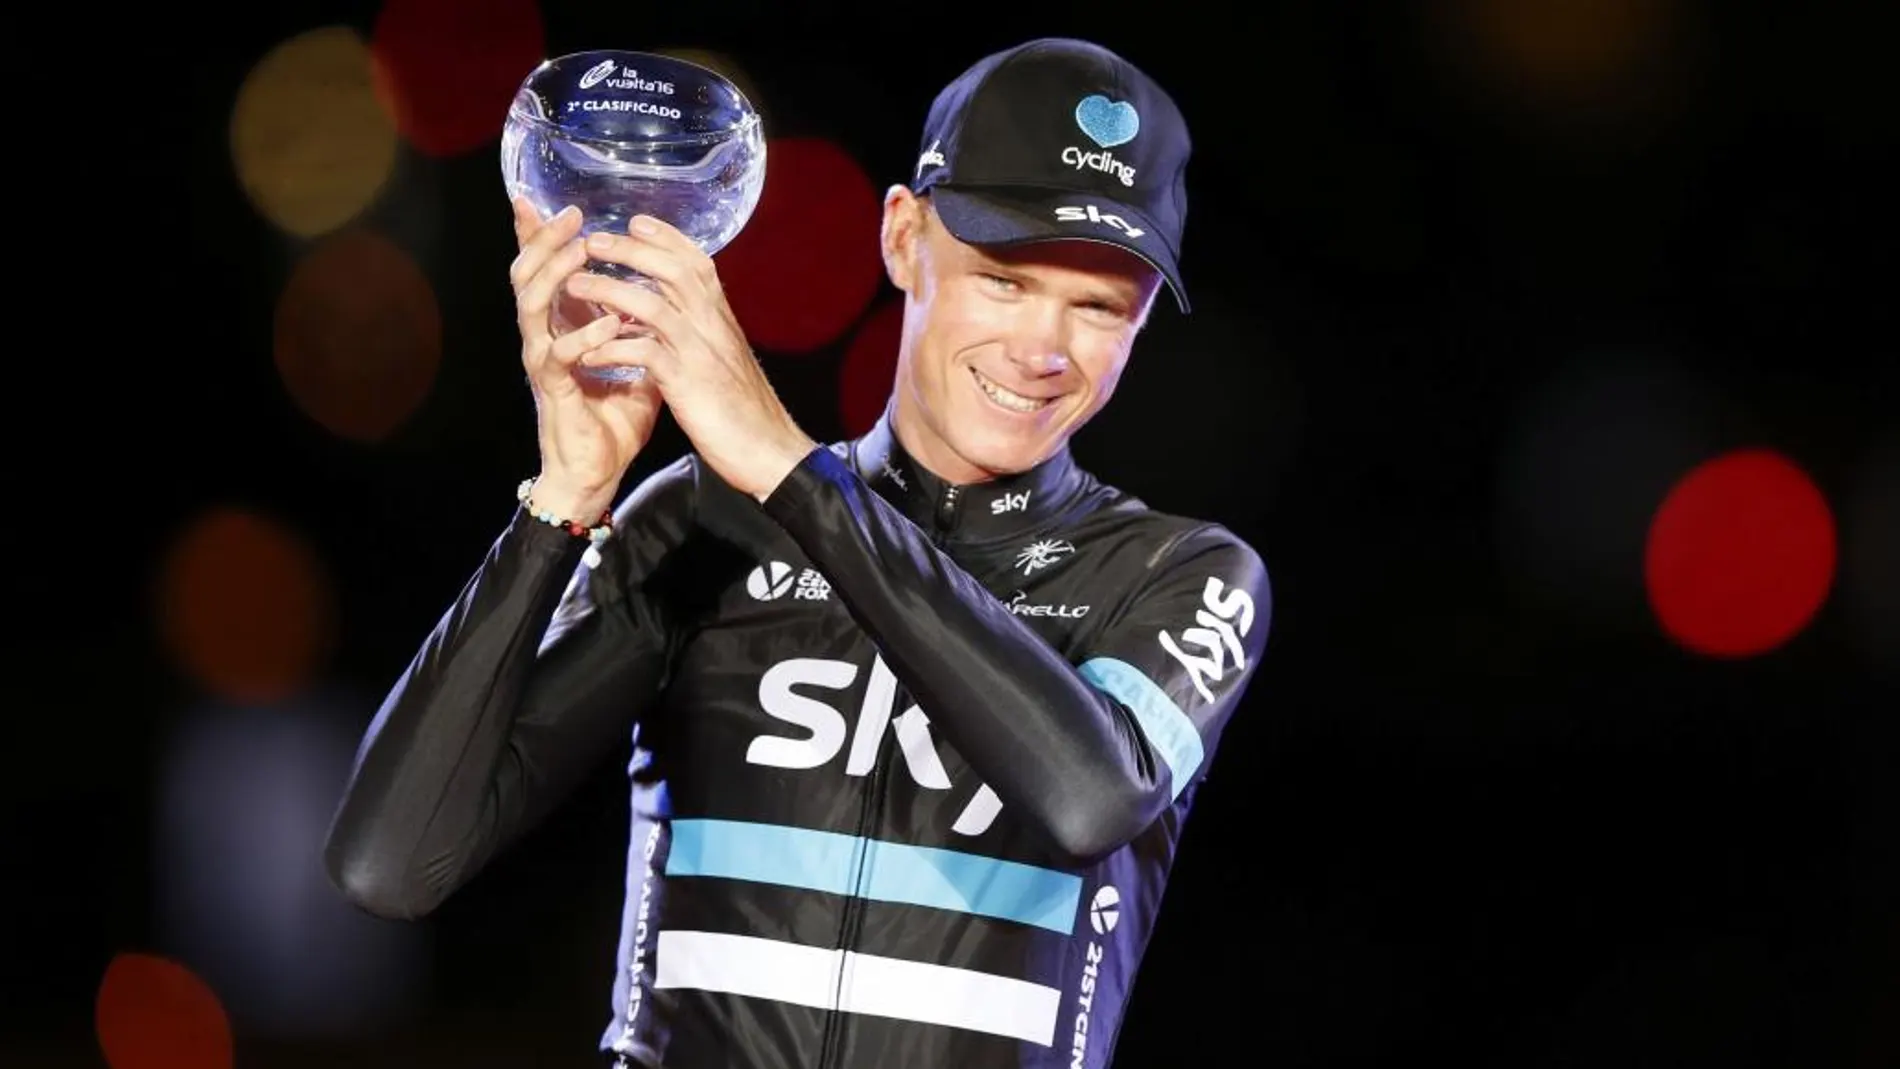 El británico del equipo Sky, Chris Froome, en el podio con el trofeo que le acredita segunda posición de la Vuelta Ciclista a España 2016.